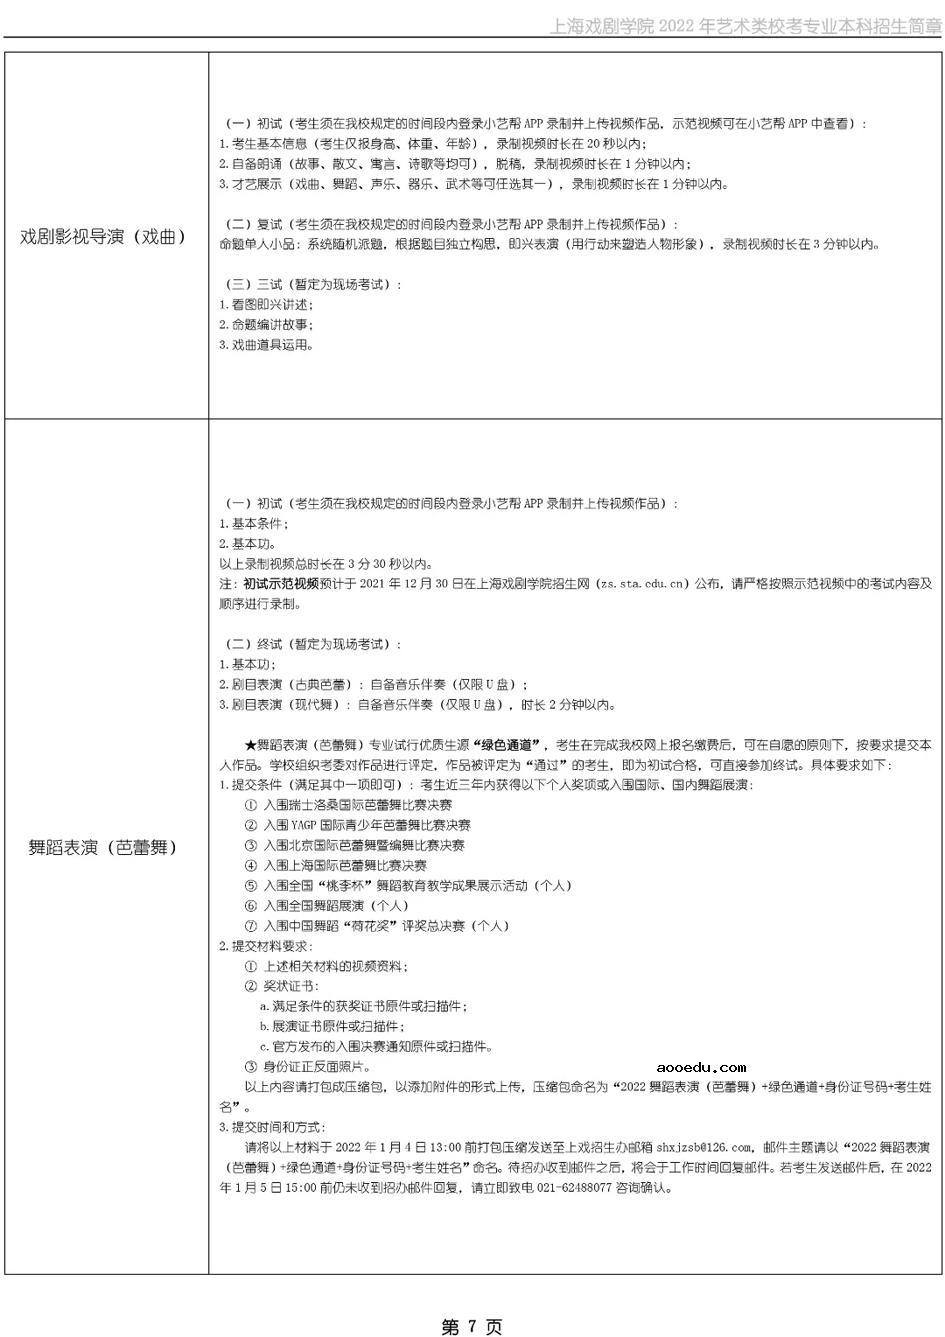 上海戏剧学院2022年艺术类校考招生简章 考试时间及内容